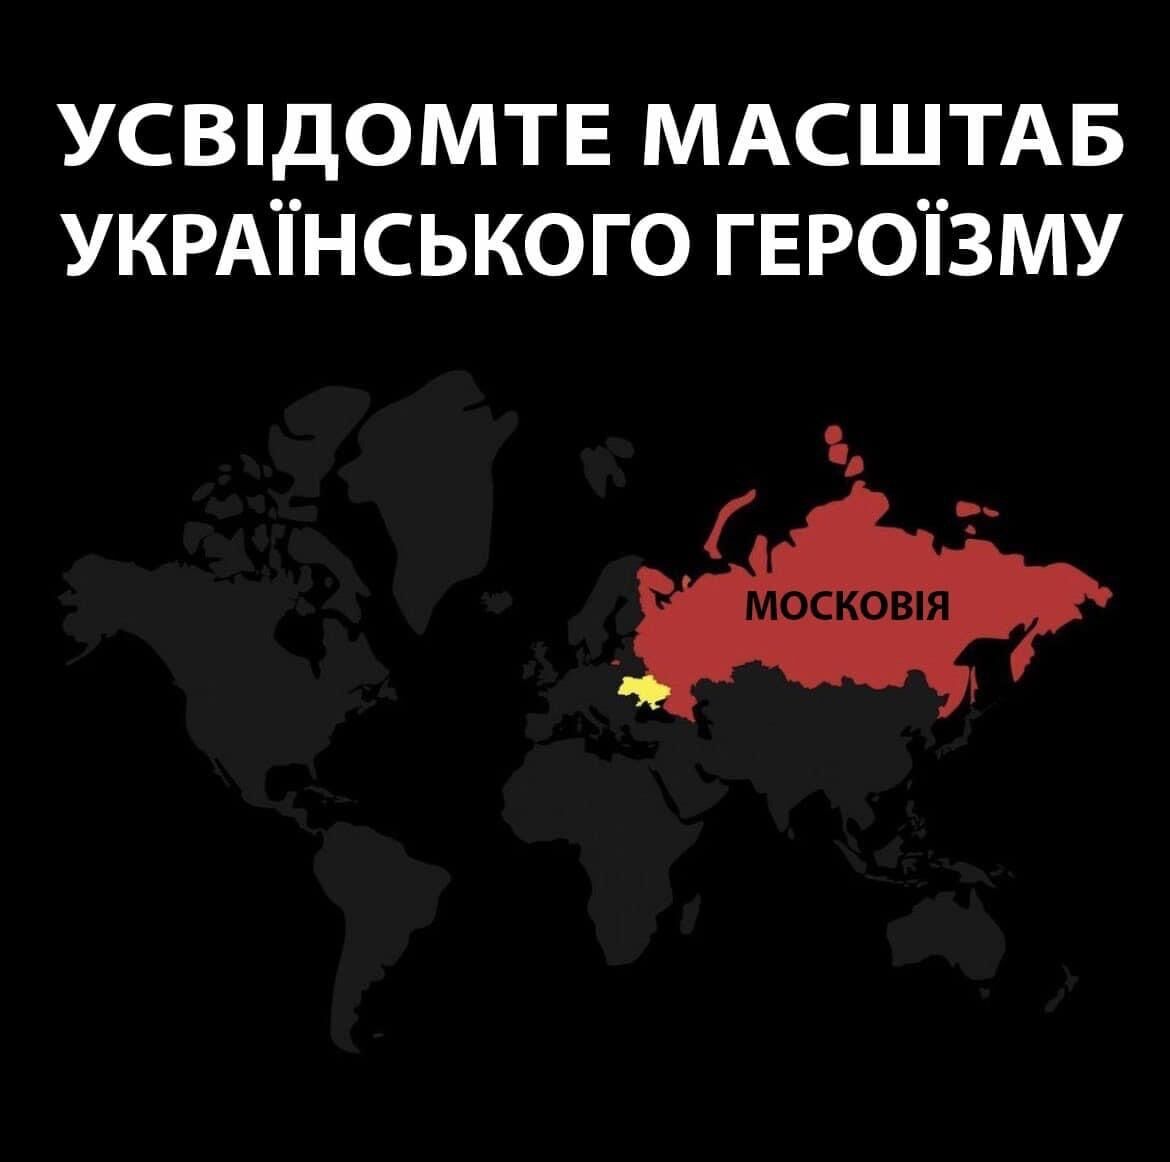 "Оцените масштаб украинского героизма": в сети сравнили размеры Украины и России. Карта